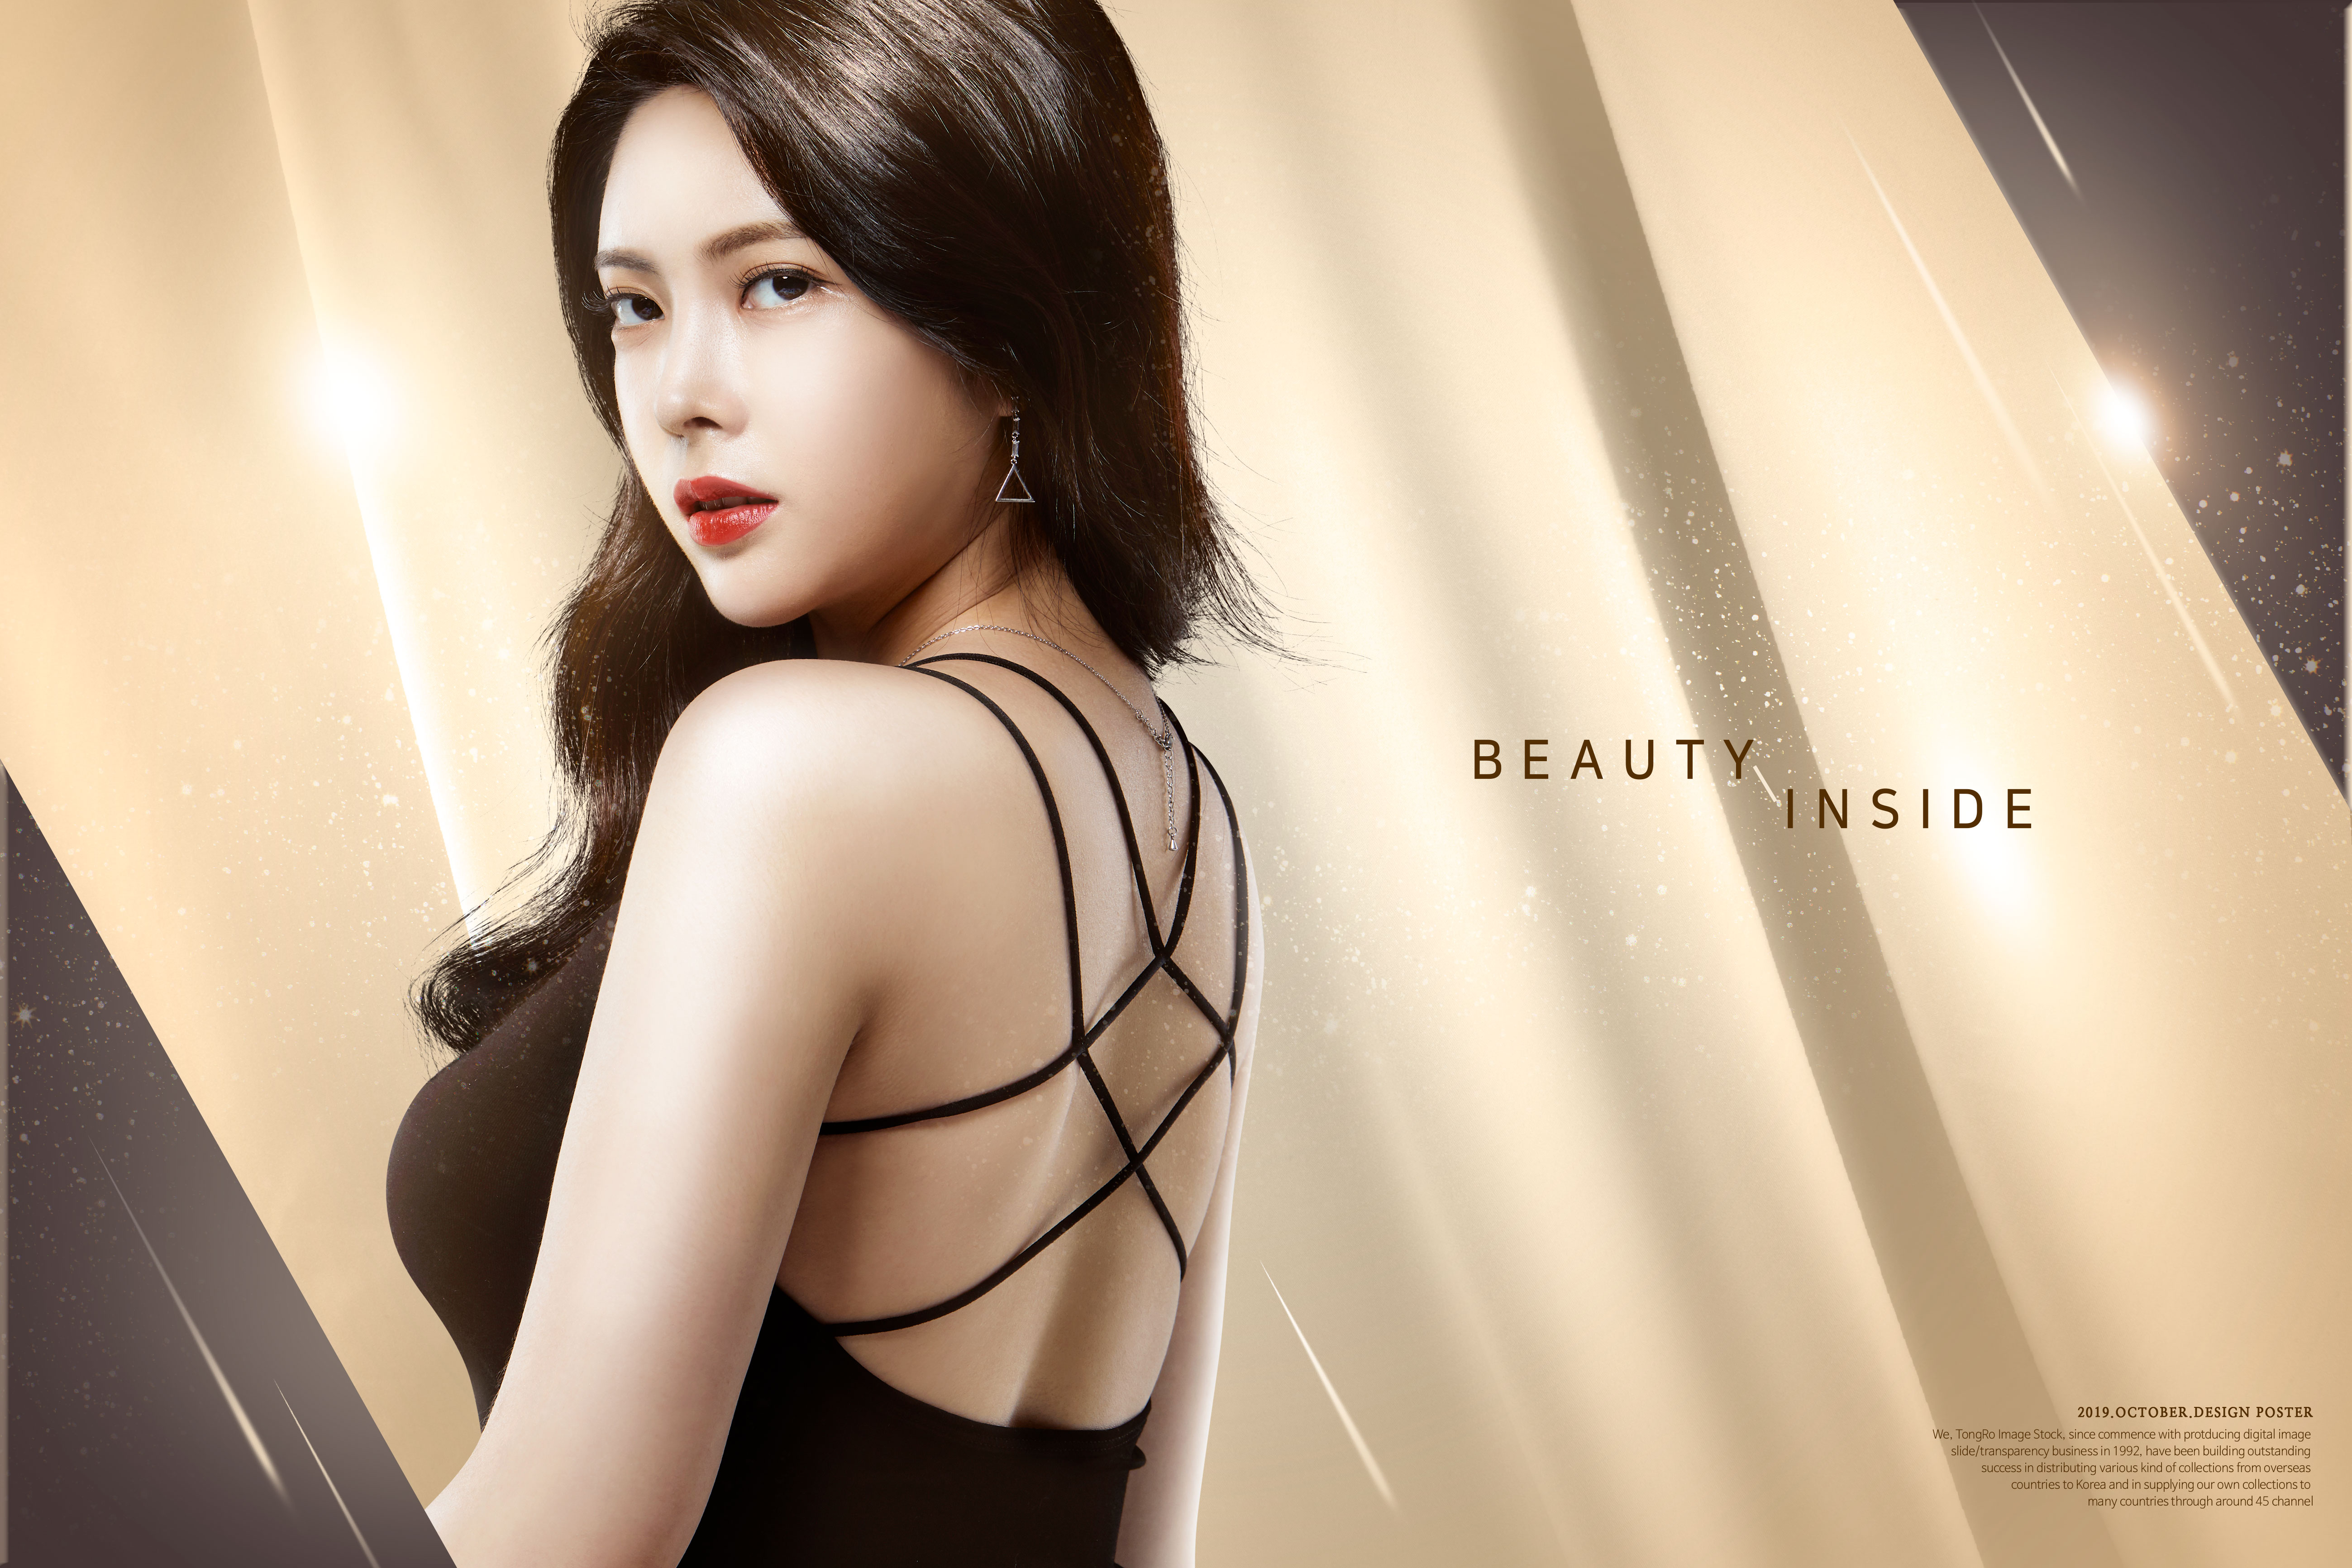 韩国气质美女美容化妆品广告海报模板套装[PSD]插图(3)